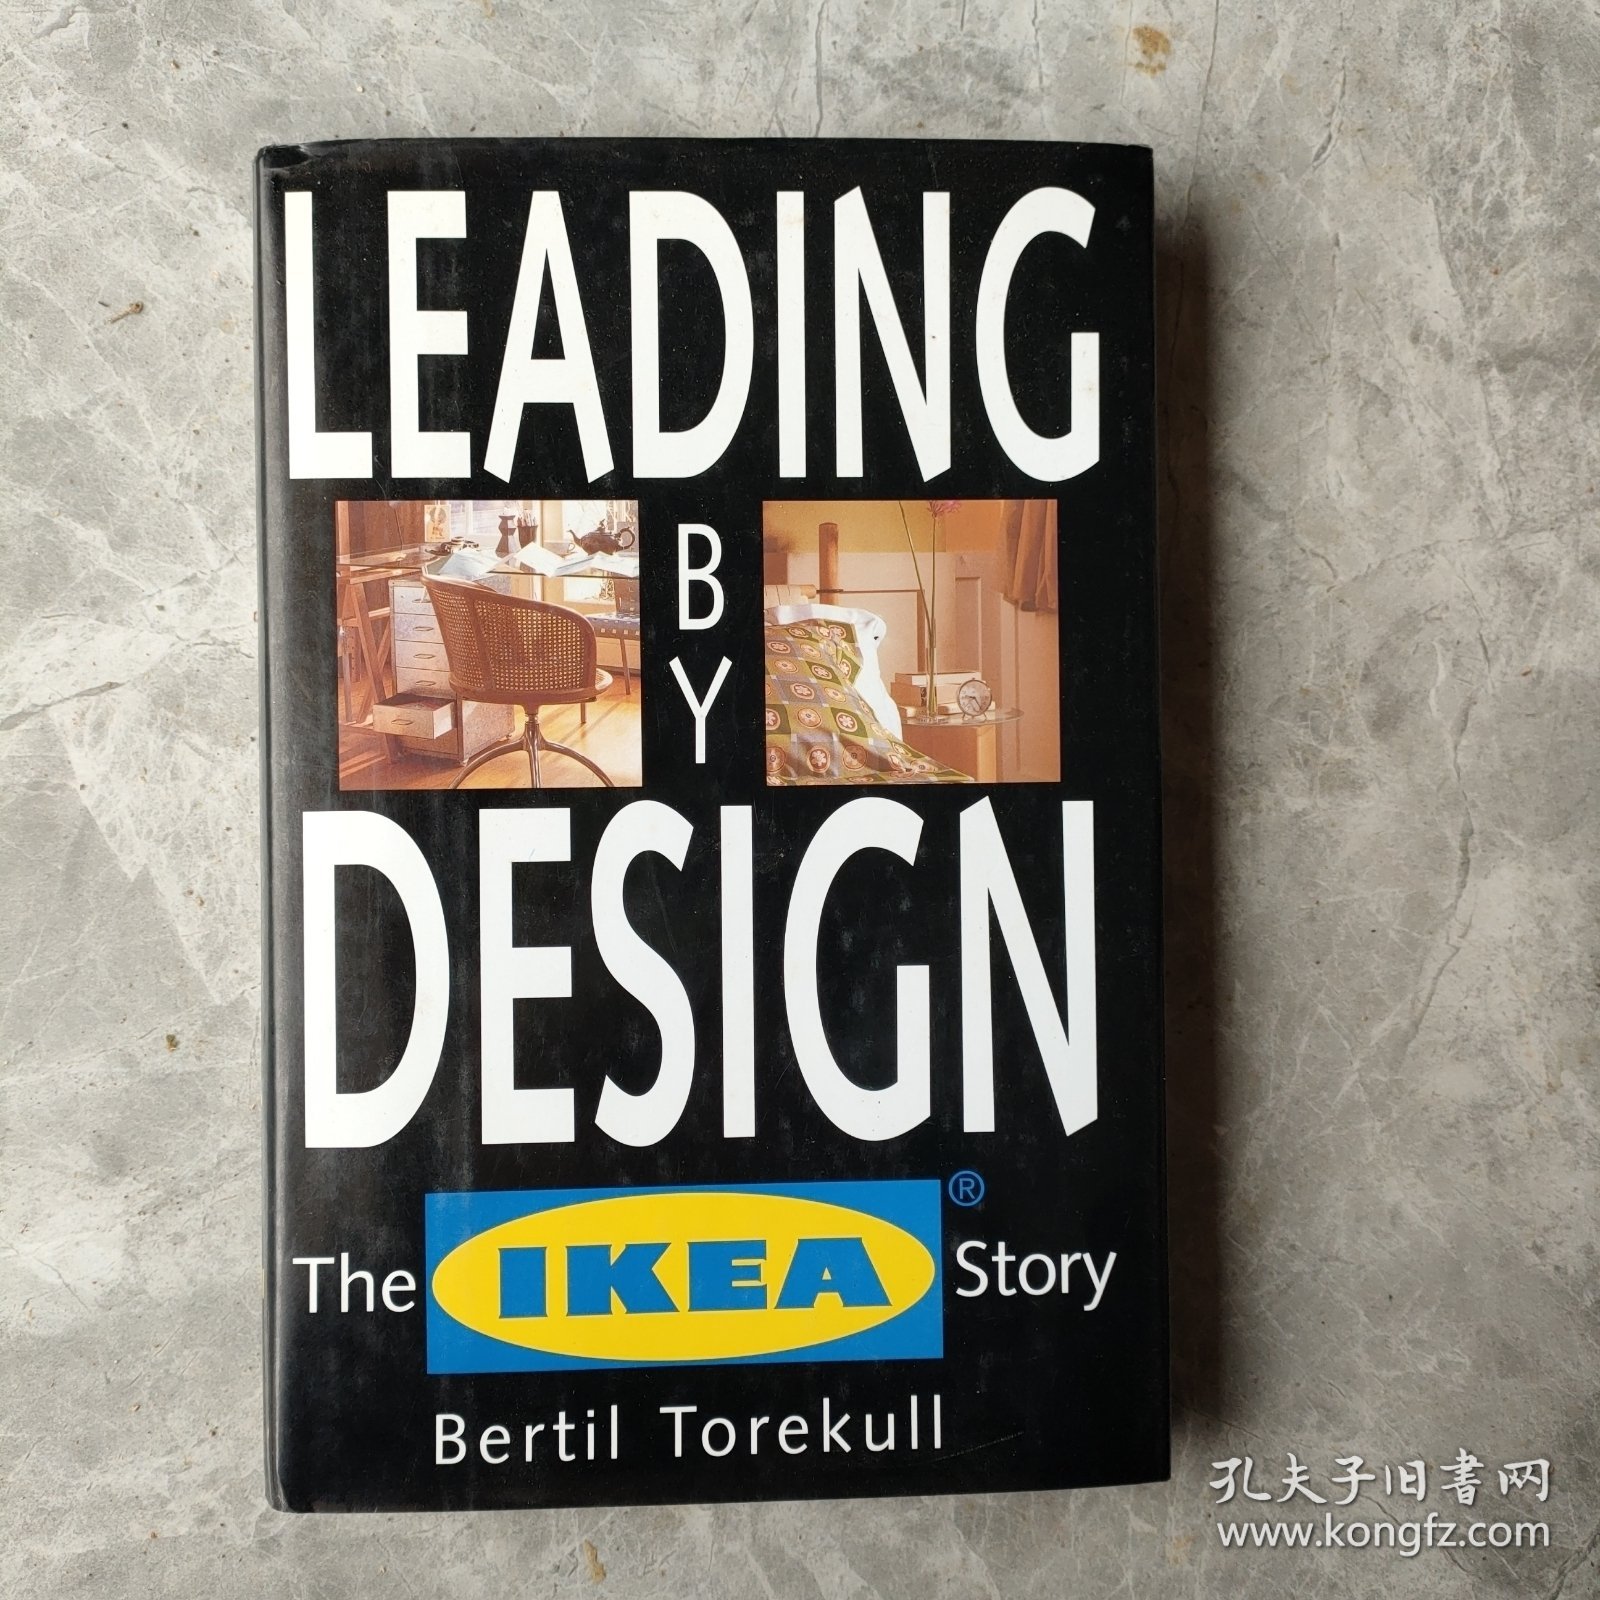 The IKEA story